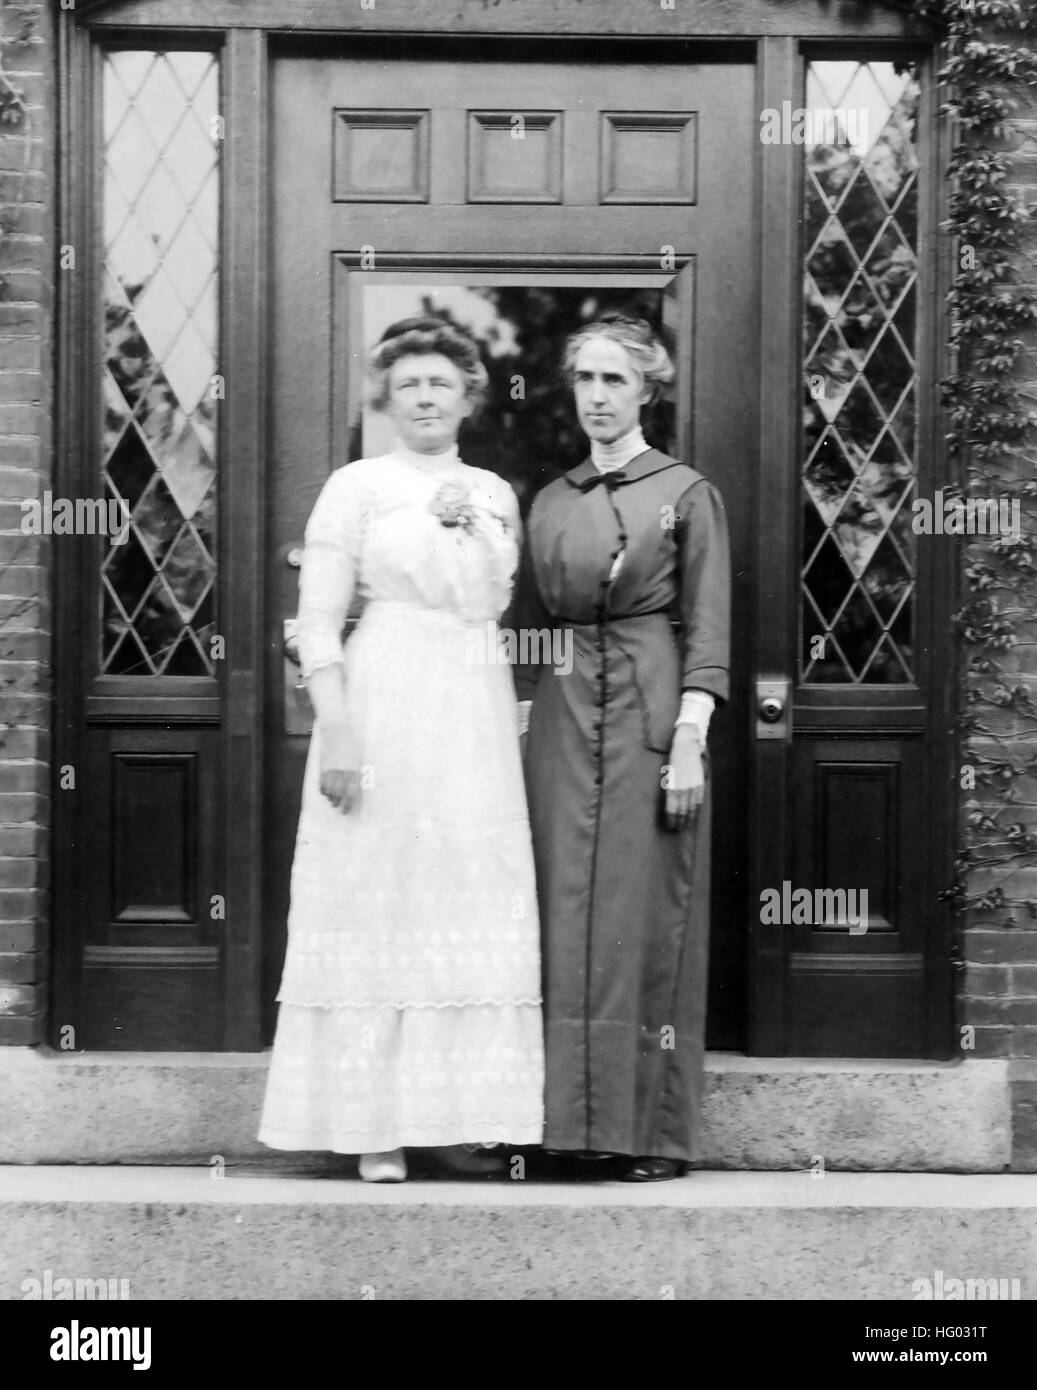 ANNIE JUMP CANON (1863-1941) astrónomo norteamericano a la izquierda con compañeros astrónoma Henrietta Swan Levitt en 1913. Foto: Harvard College Foto de stock